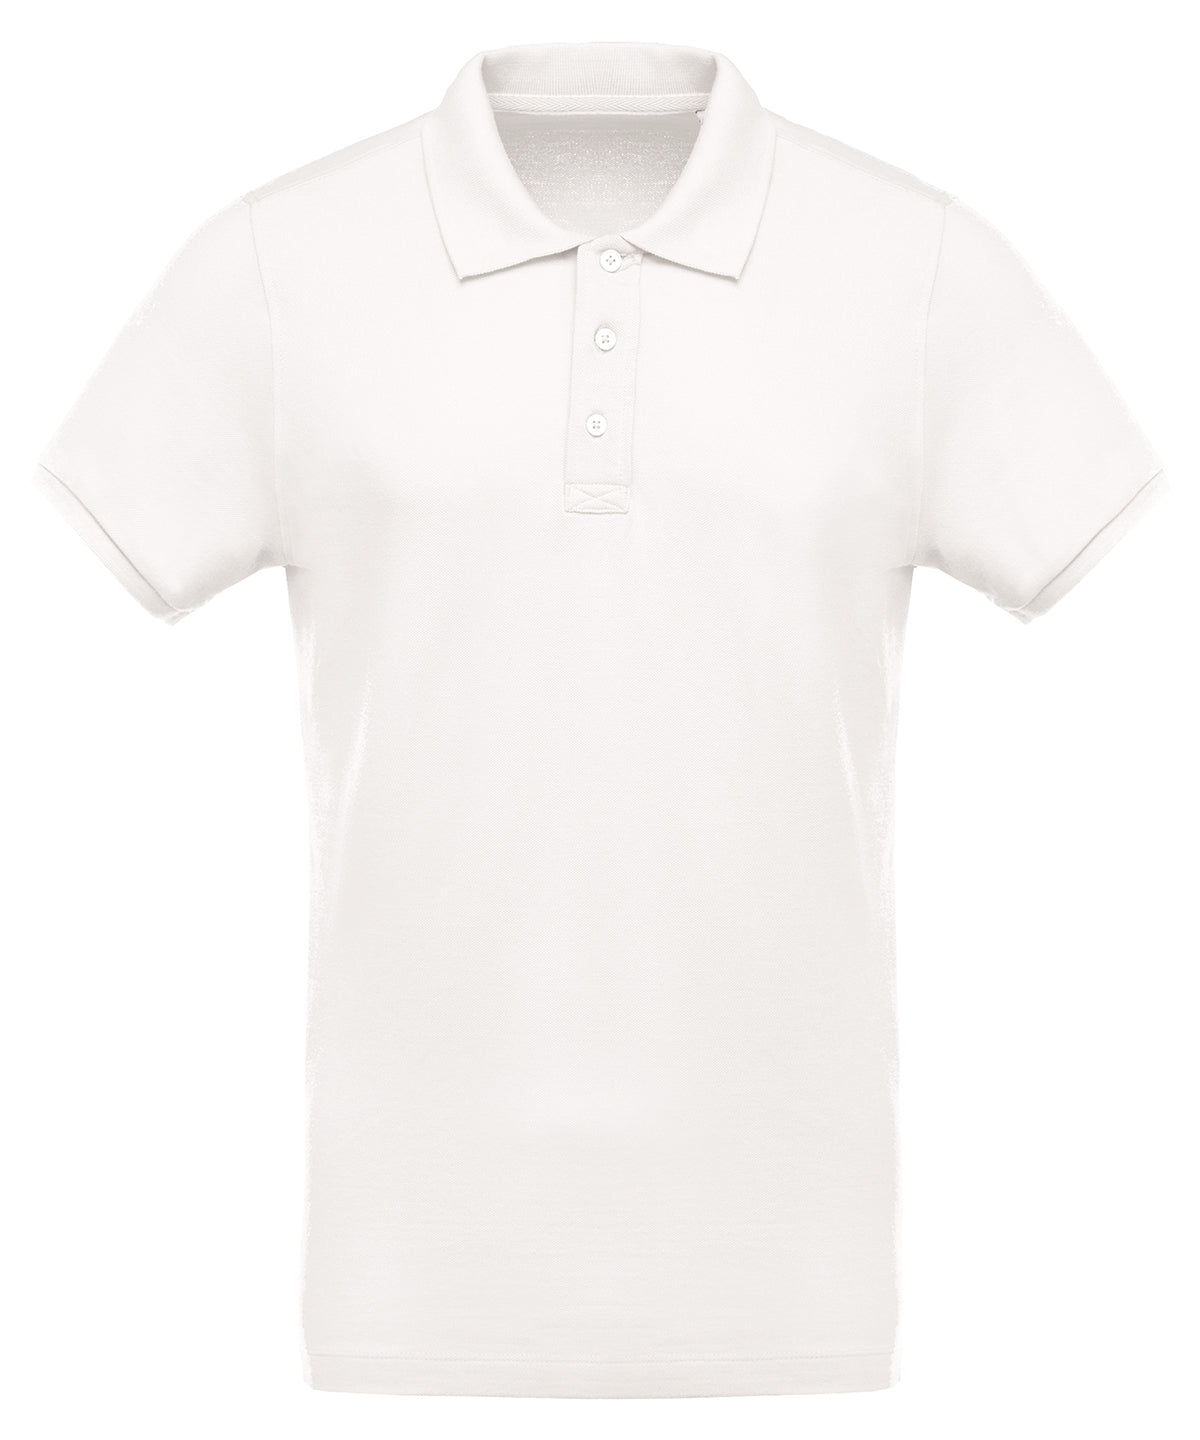 Men's Organic Piqué Short-Sleeved Polo Shirt